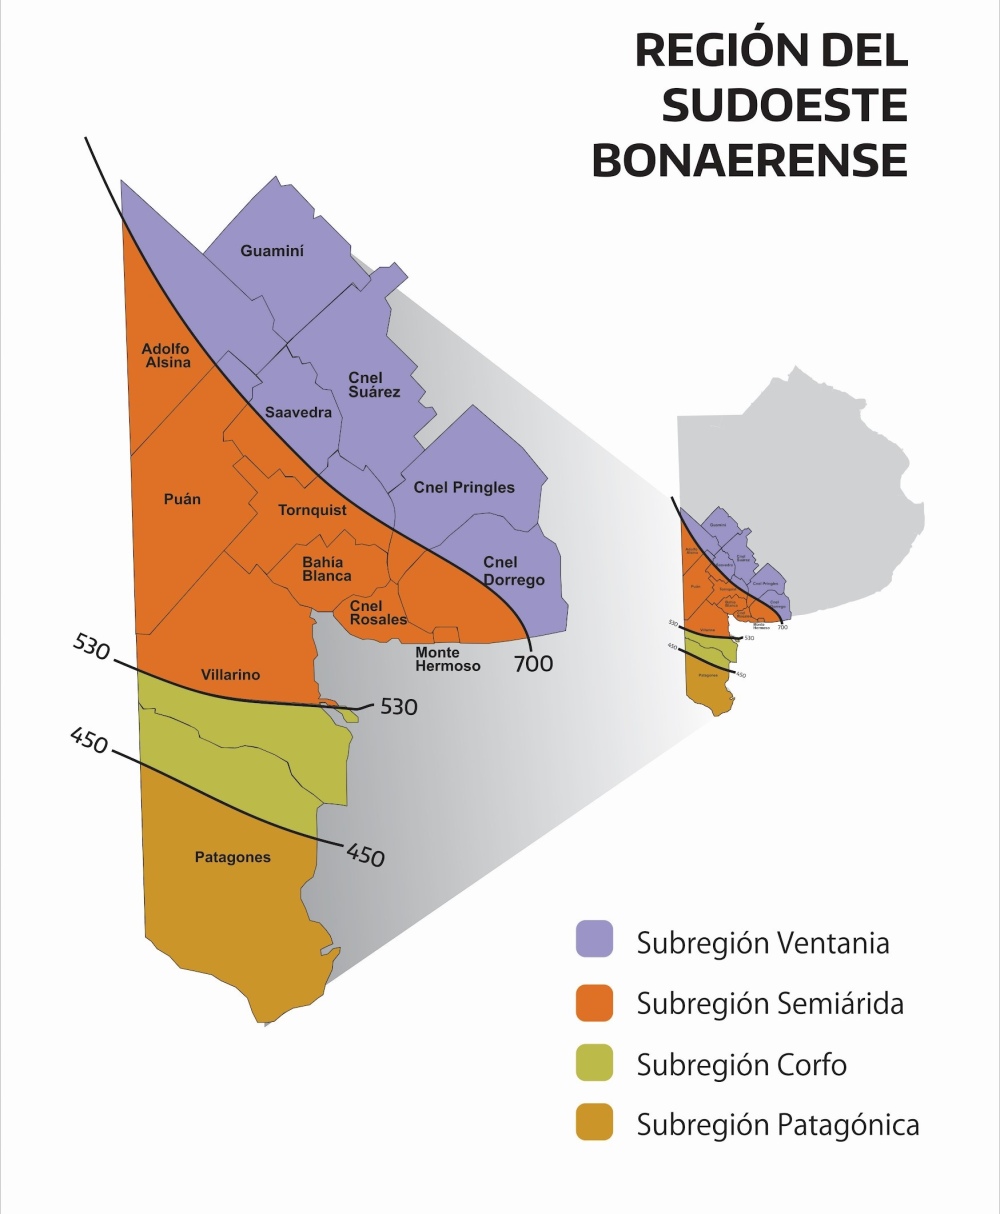 Nueva Reunión del Consejo Regional del Plan de Desarrollo del SudOeste Bonaerense